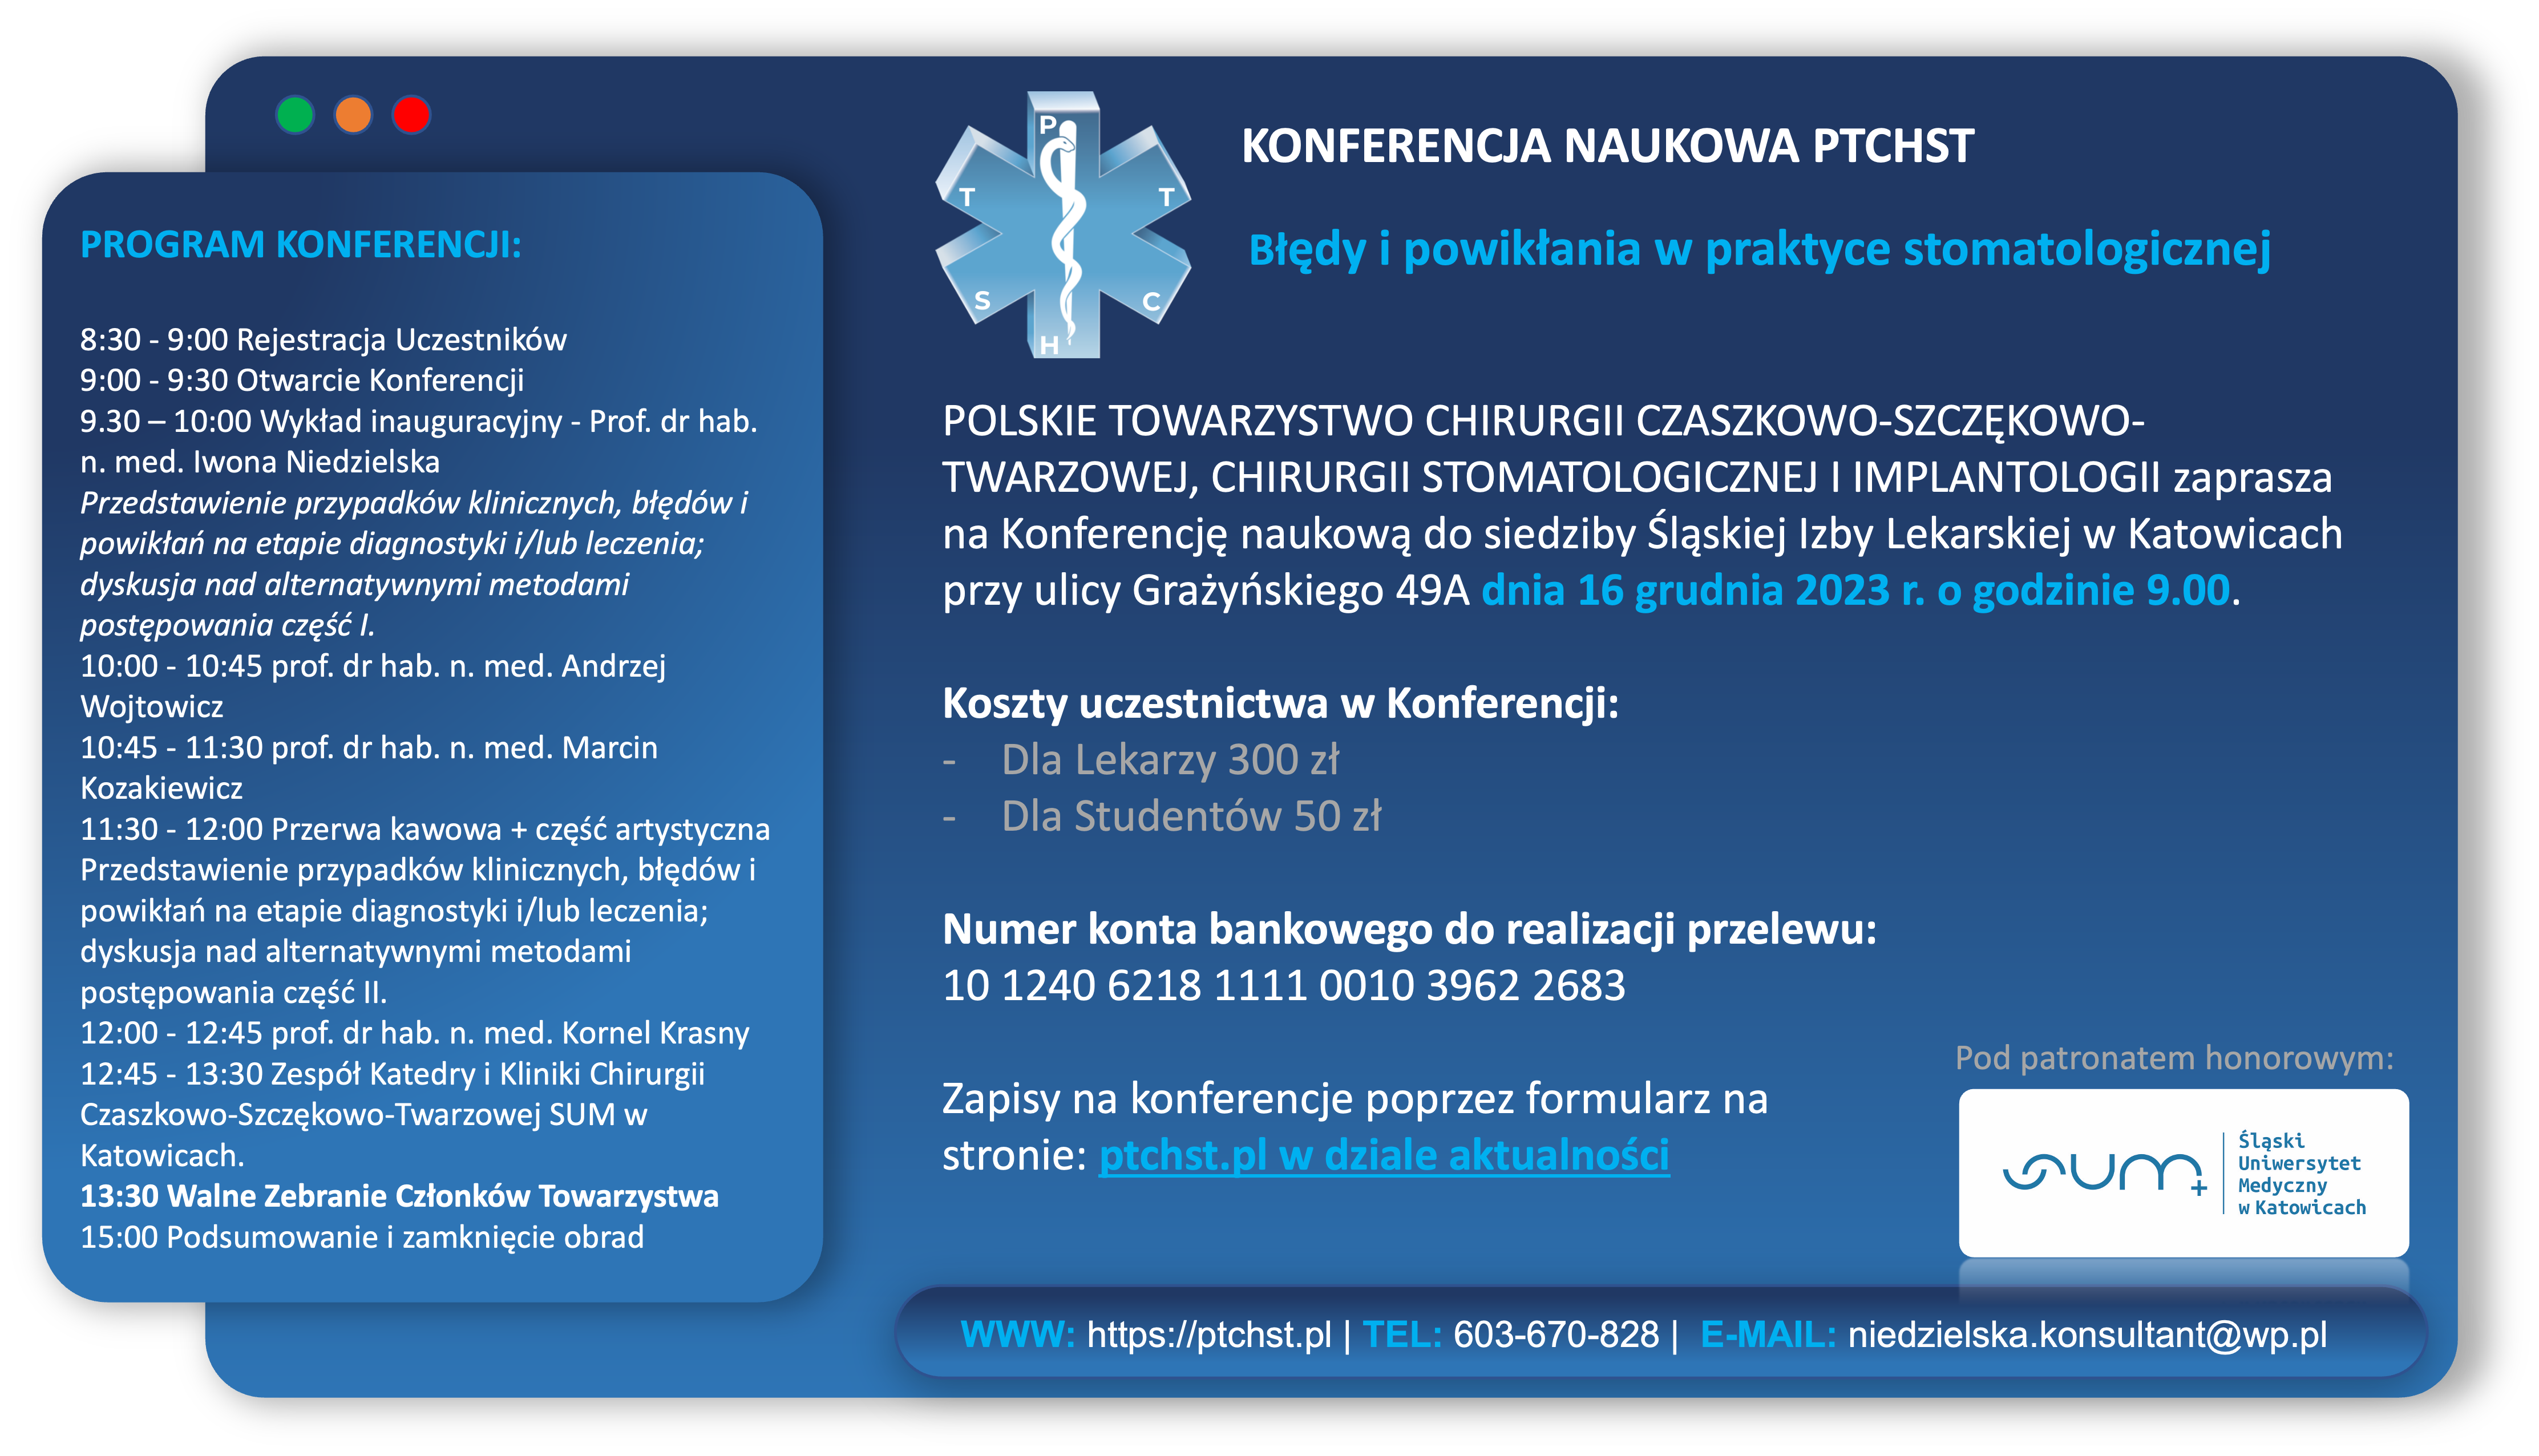 Konferencja naukowa PTCHST Katowice 2023